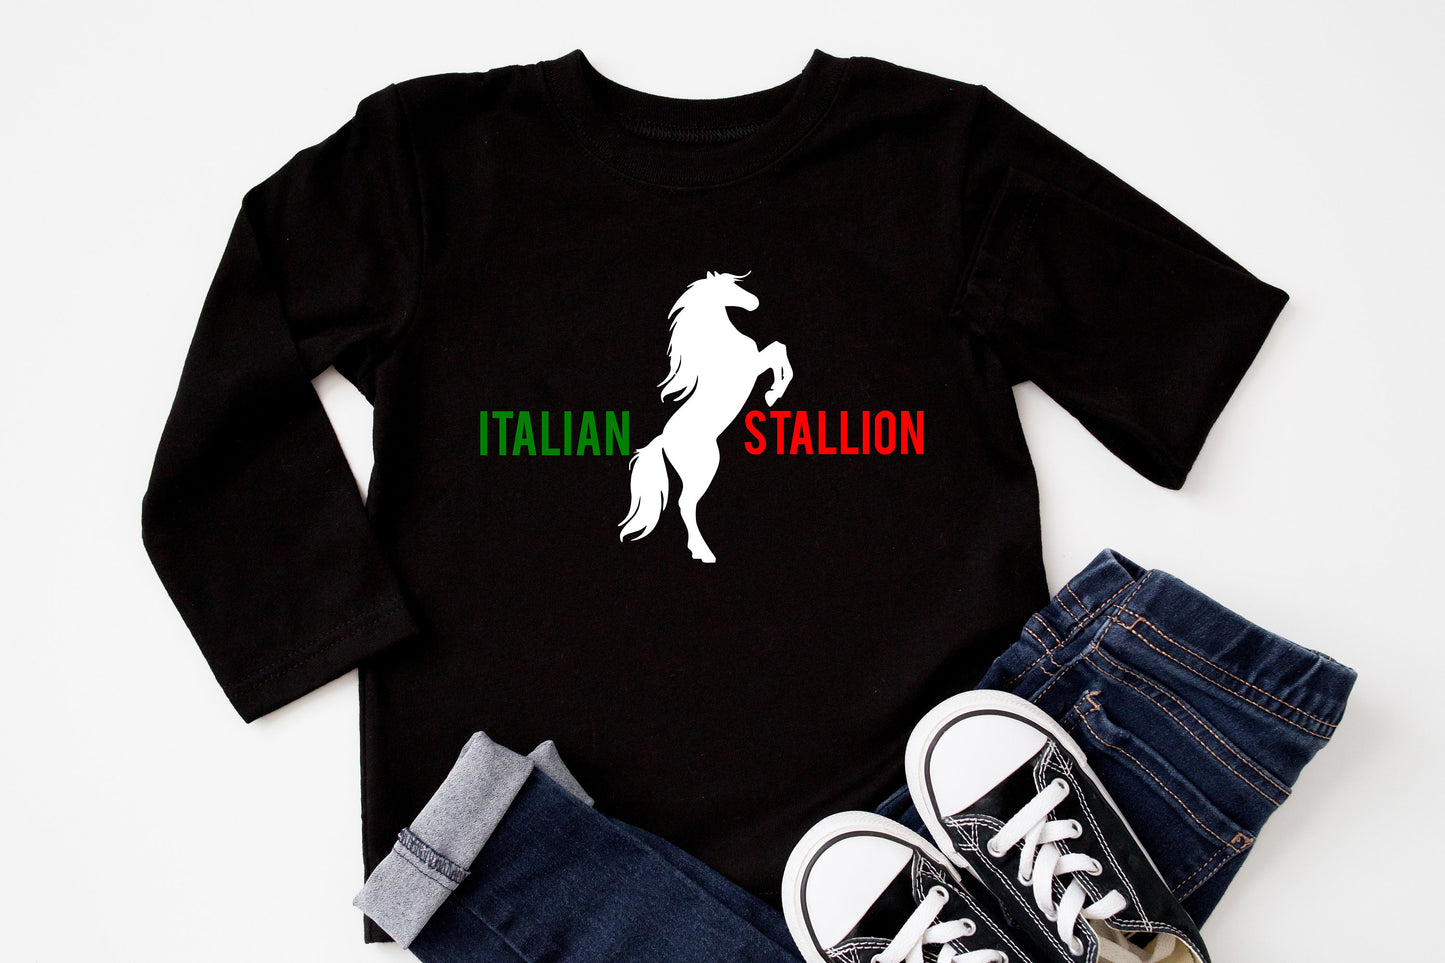 Italian Stallion Infant or Toddler Shirt or Bodysuit - Cute Toddler Shirt - Italian Shirt - Italian Heritage - Toddler Boy Shirt - Preschool